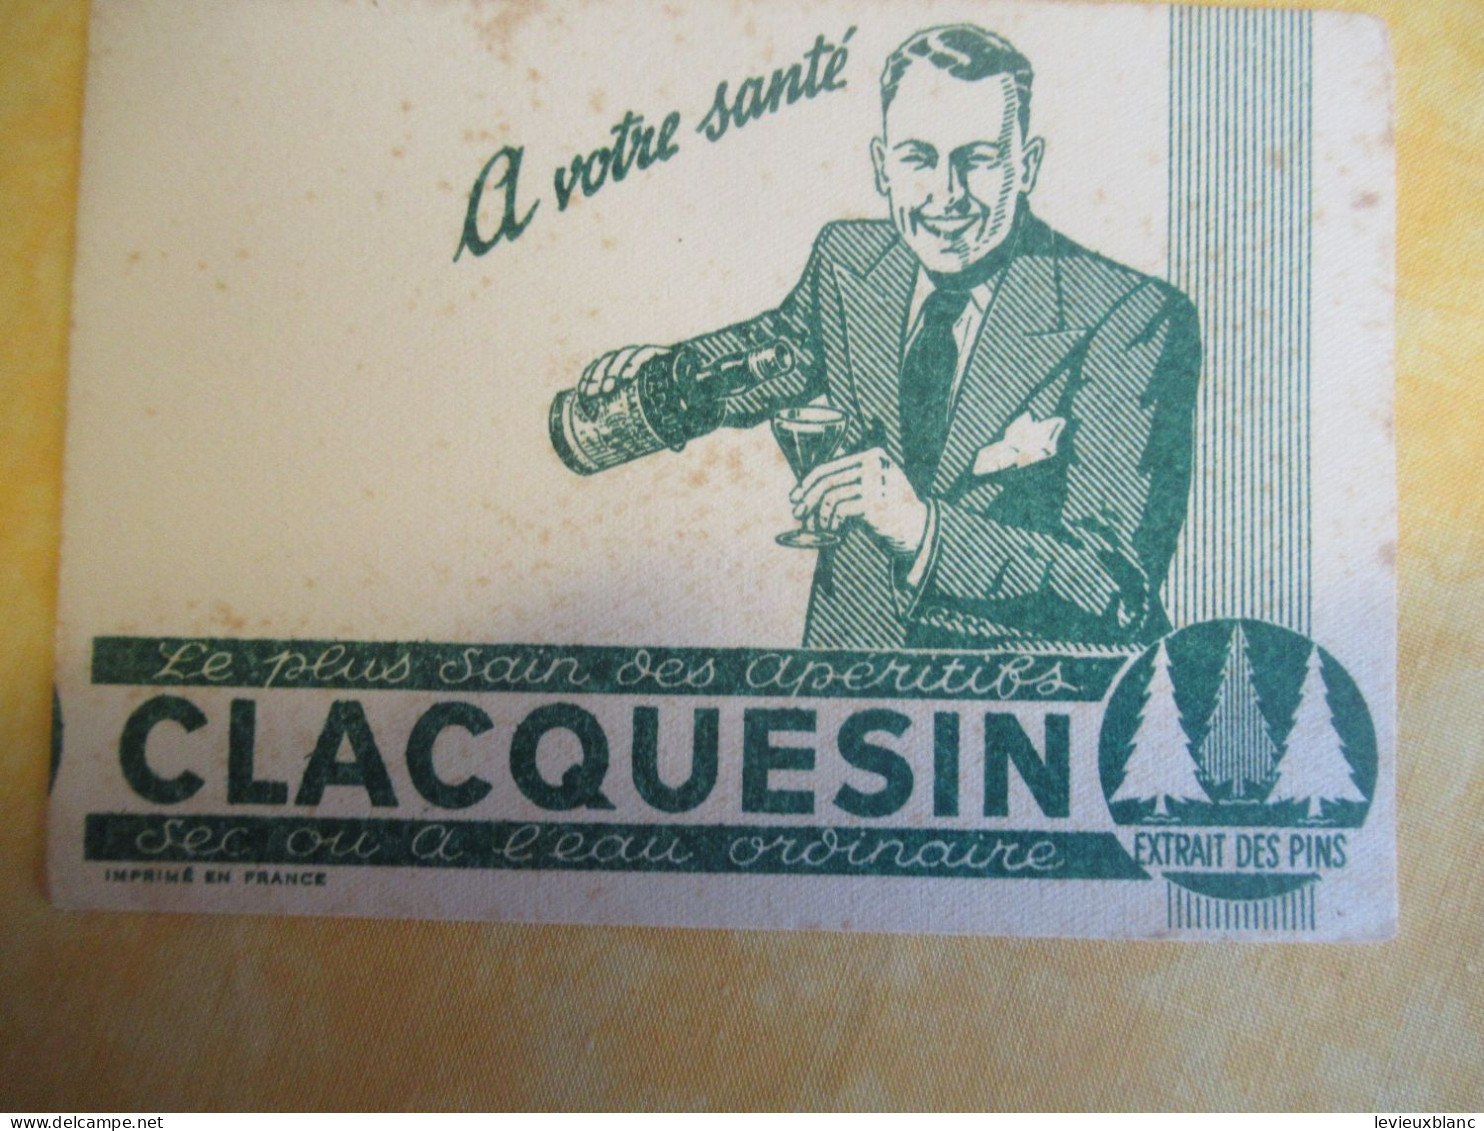 2 Petits Buvards Anciens /Liqueur/CLACQUESIN/ Extrait Des Pins/En été à L'eau Fraîche/Vers 1950-1960      BUV702 - Liqueur & Bière